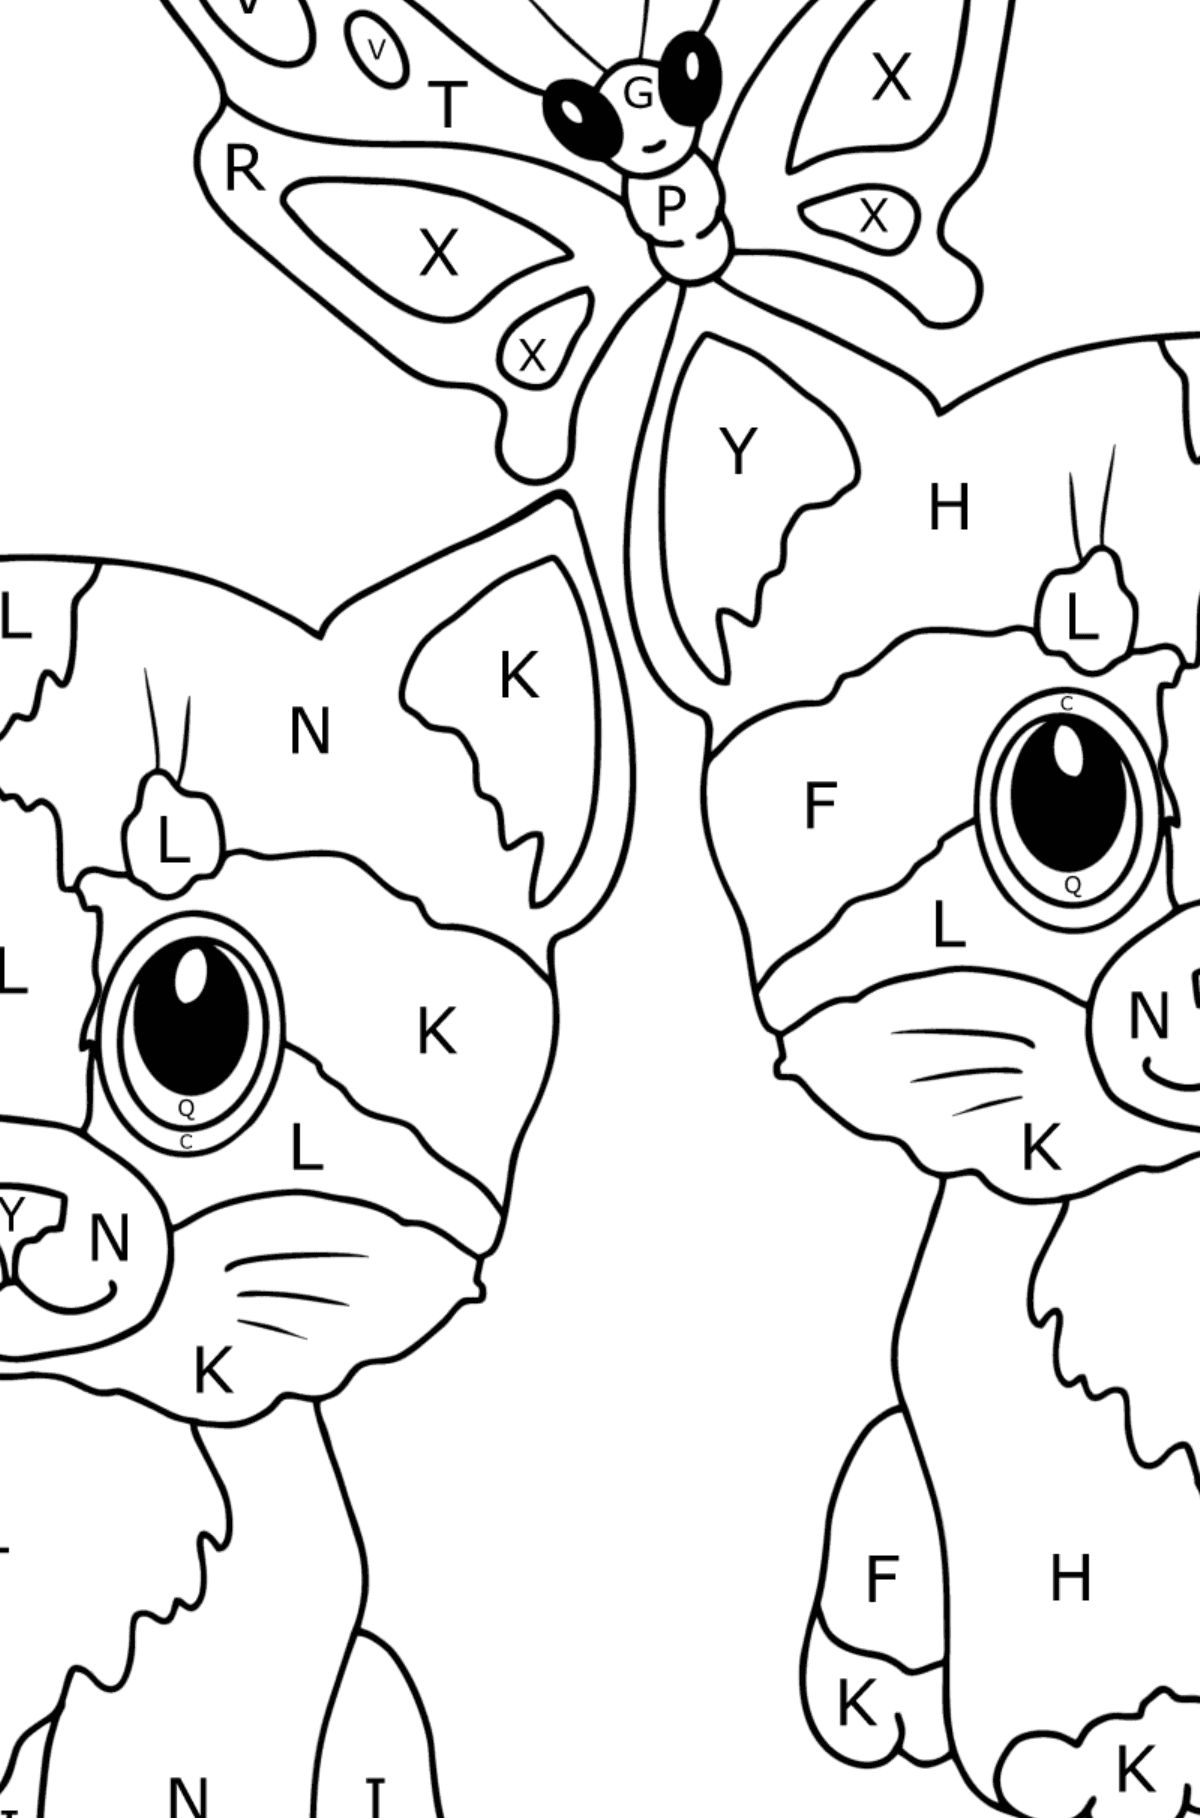 Disegno da colorare di simpatici gattini per i più piccoli - Colorare per lettere per bambini